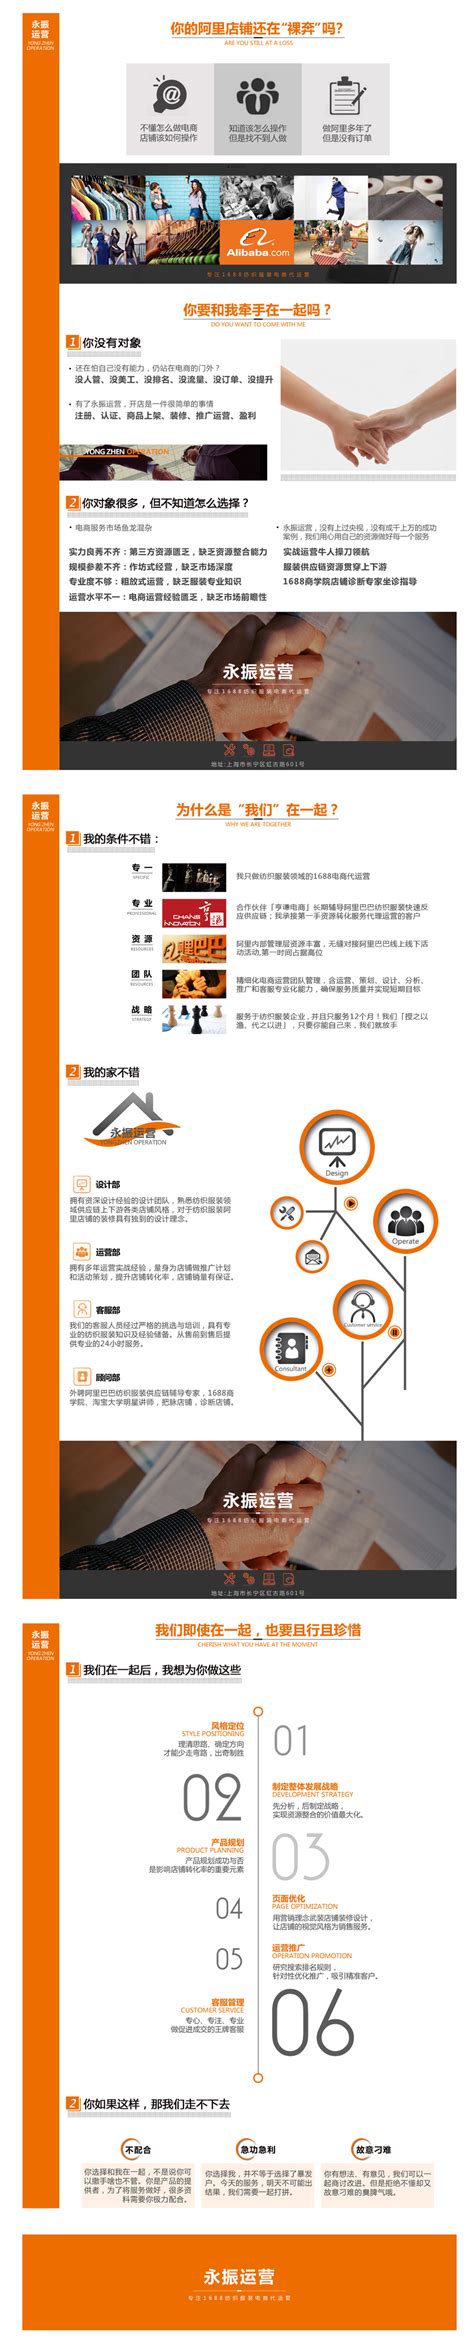 人与空间的联系唤起情感共鸣:上海阿里中心商业综合体设计-全国搜狐焦点